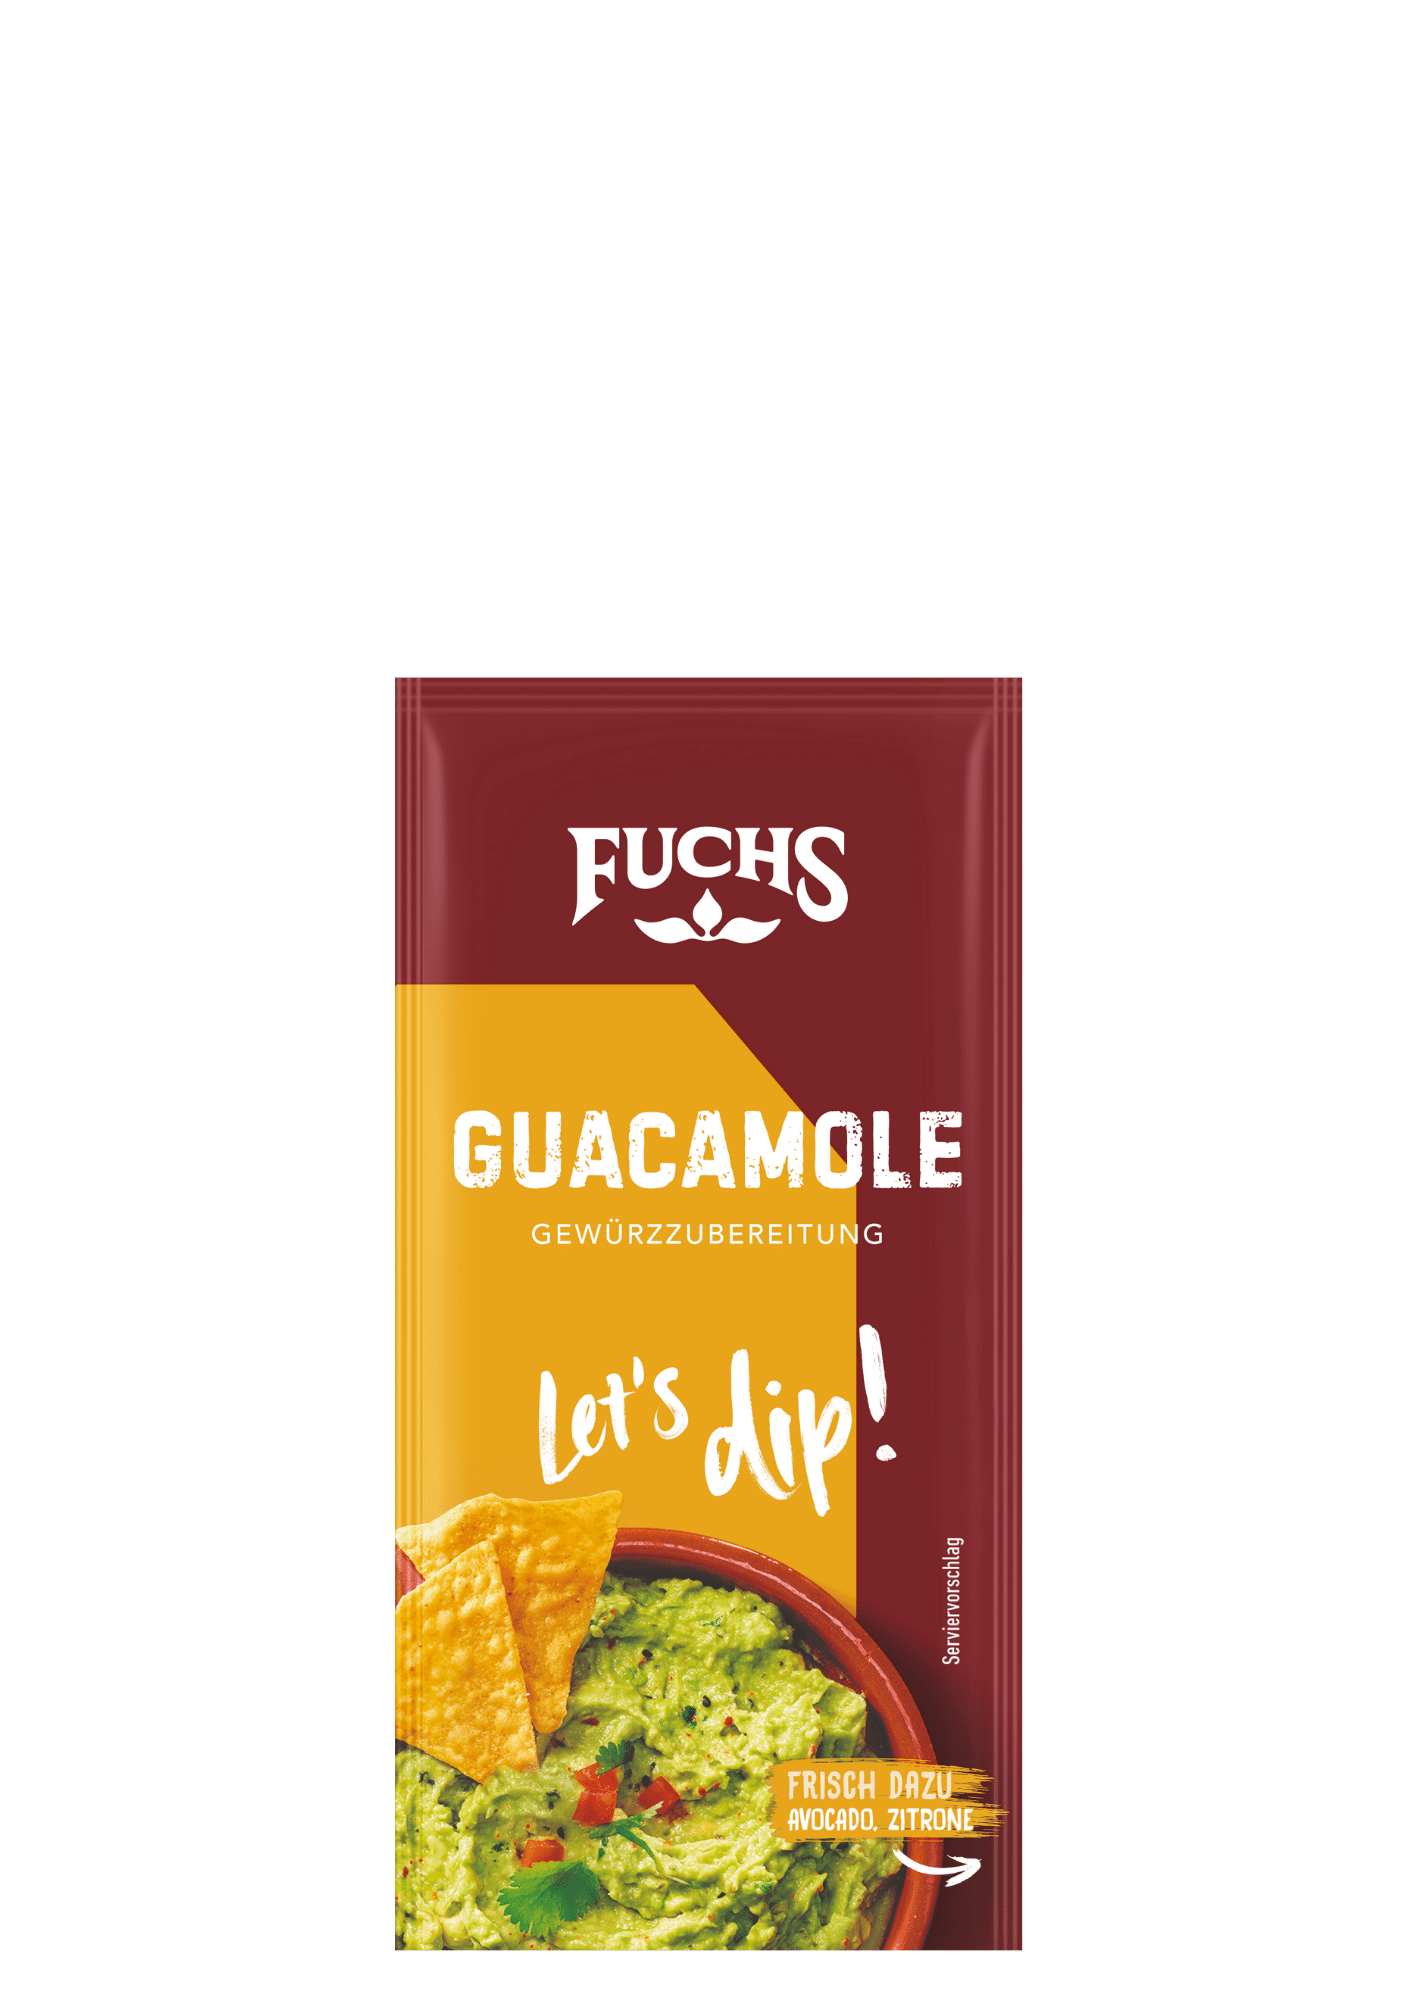 Let's dip! Guacamole